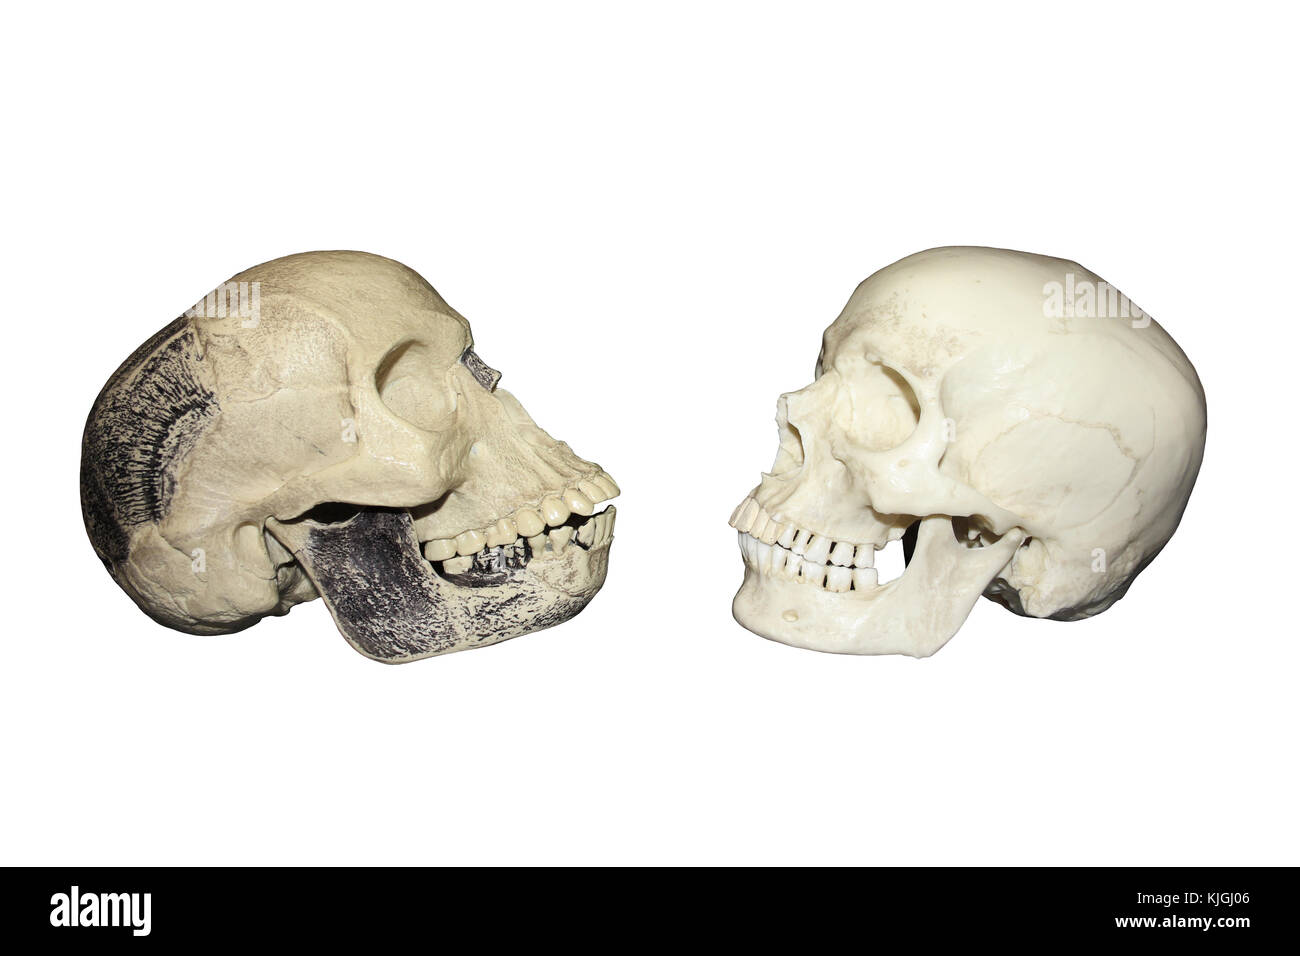 Vergleich Piltdown Man vs modernen menschlichen Schädel, Seitenansicht Stockfoto